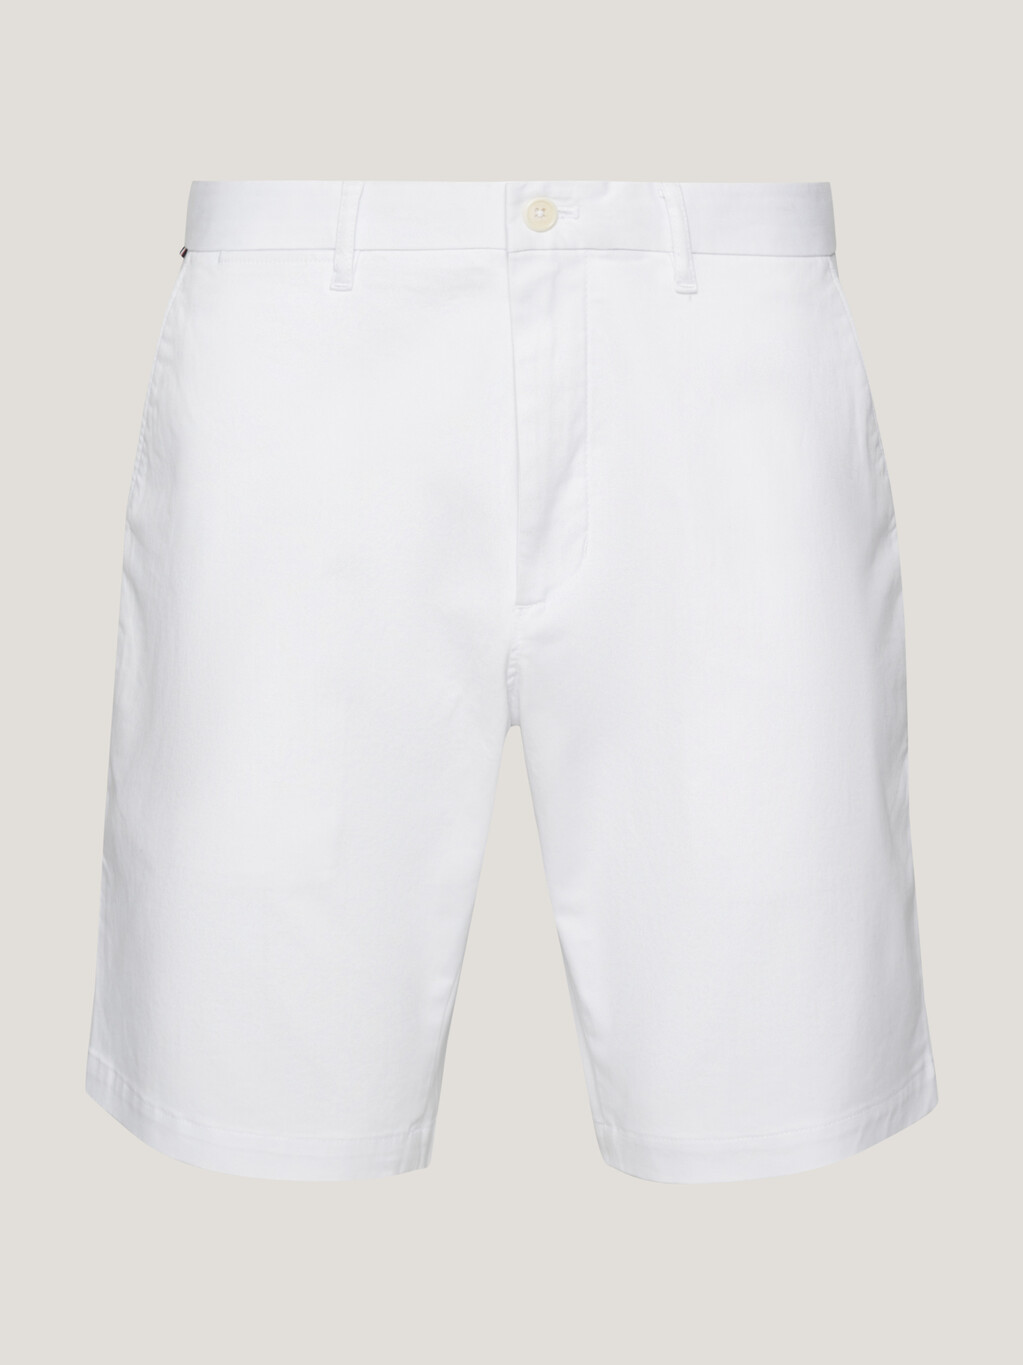 1985系列harlem 短褲, Th Optic White, hi-res